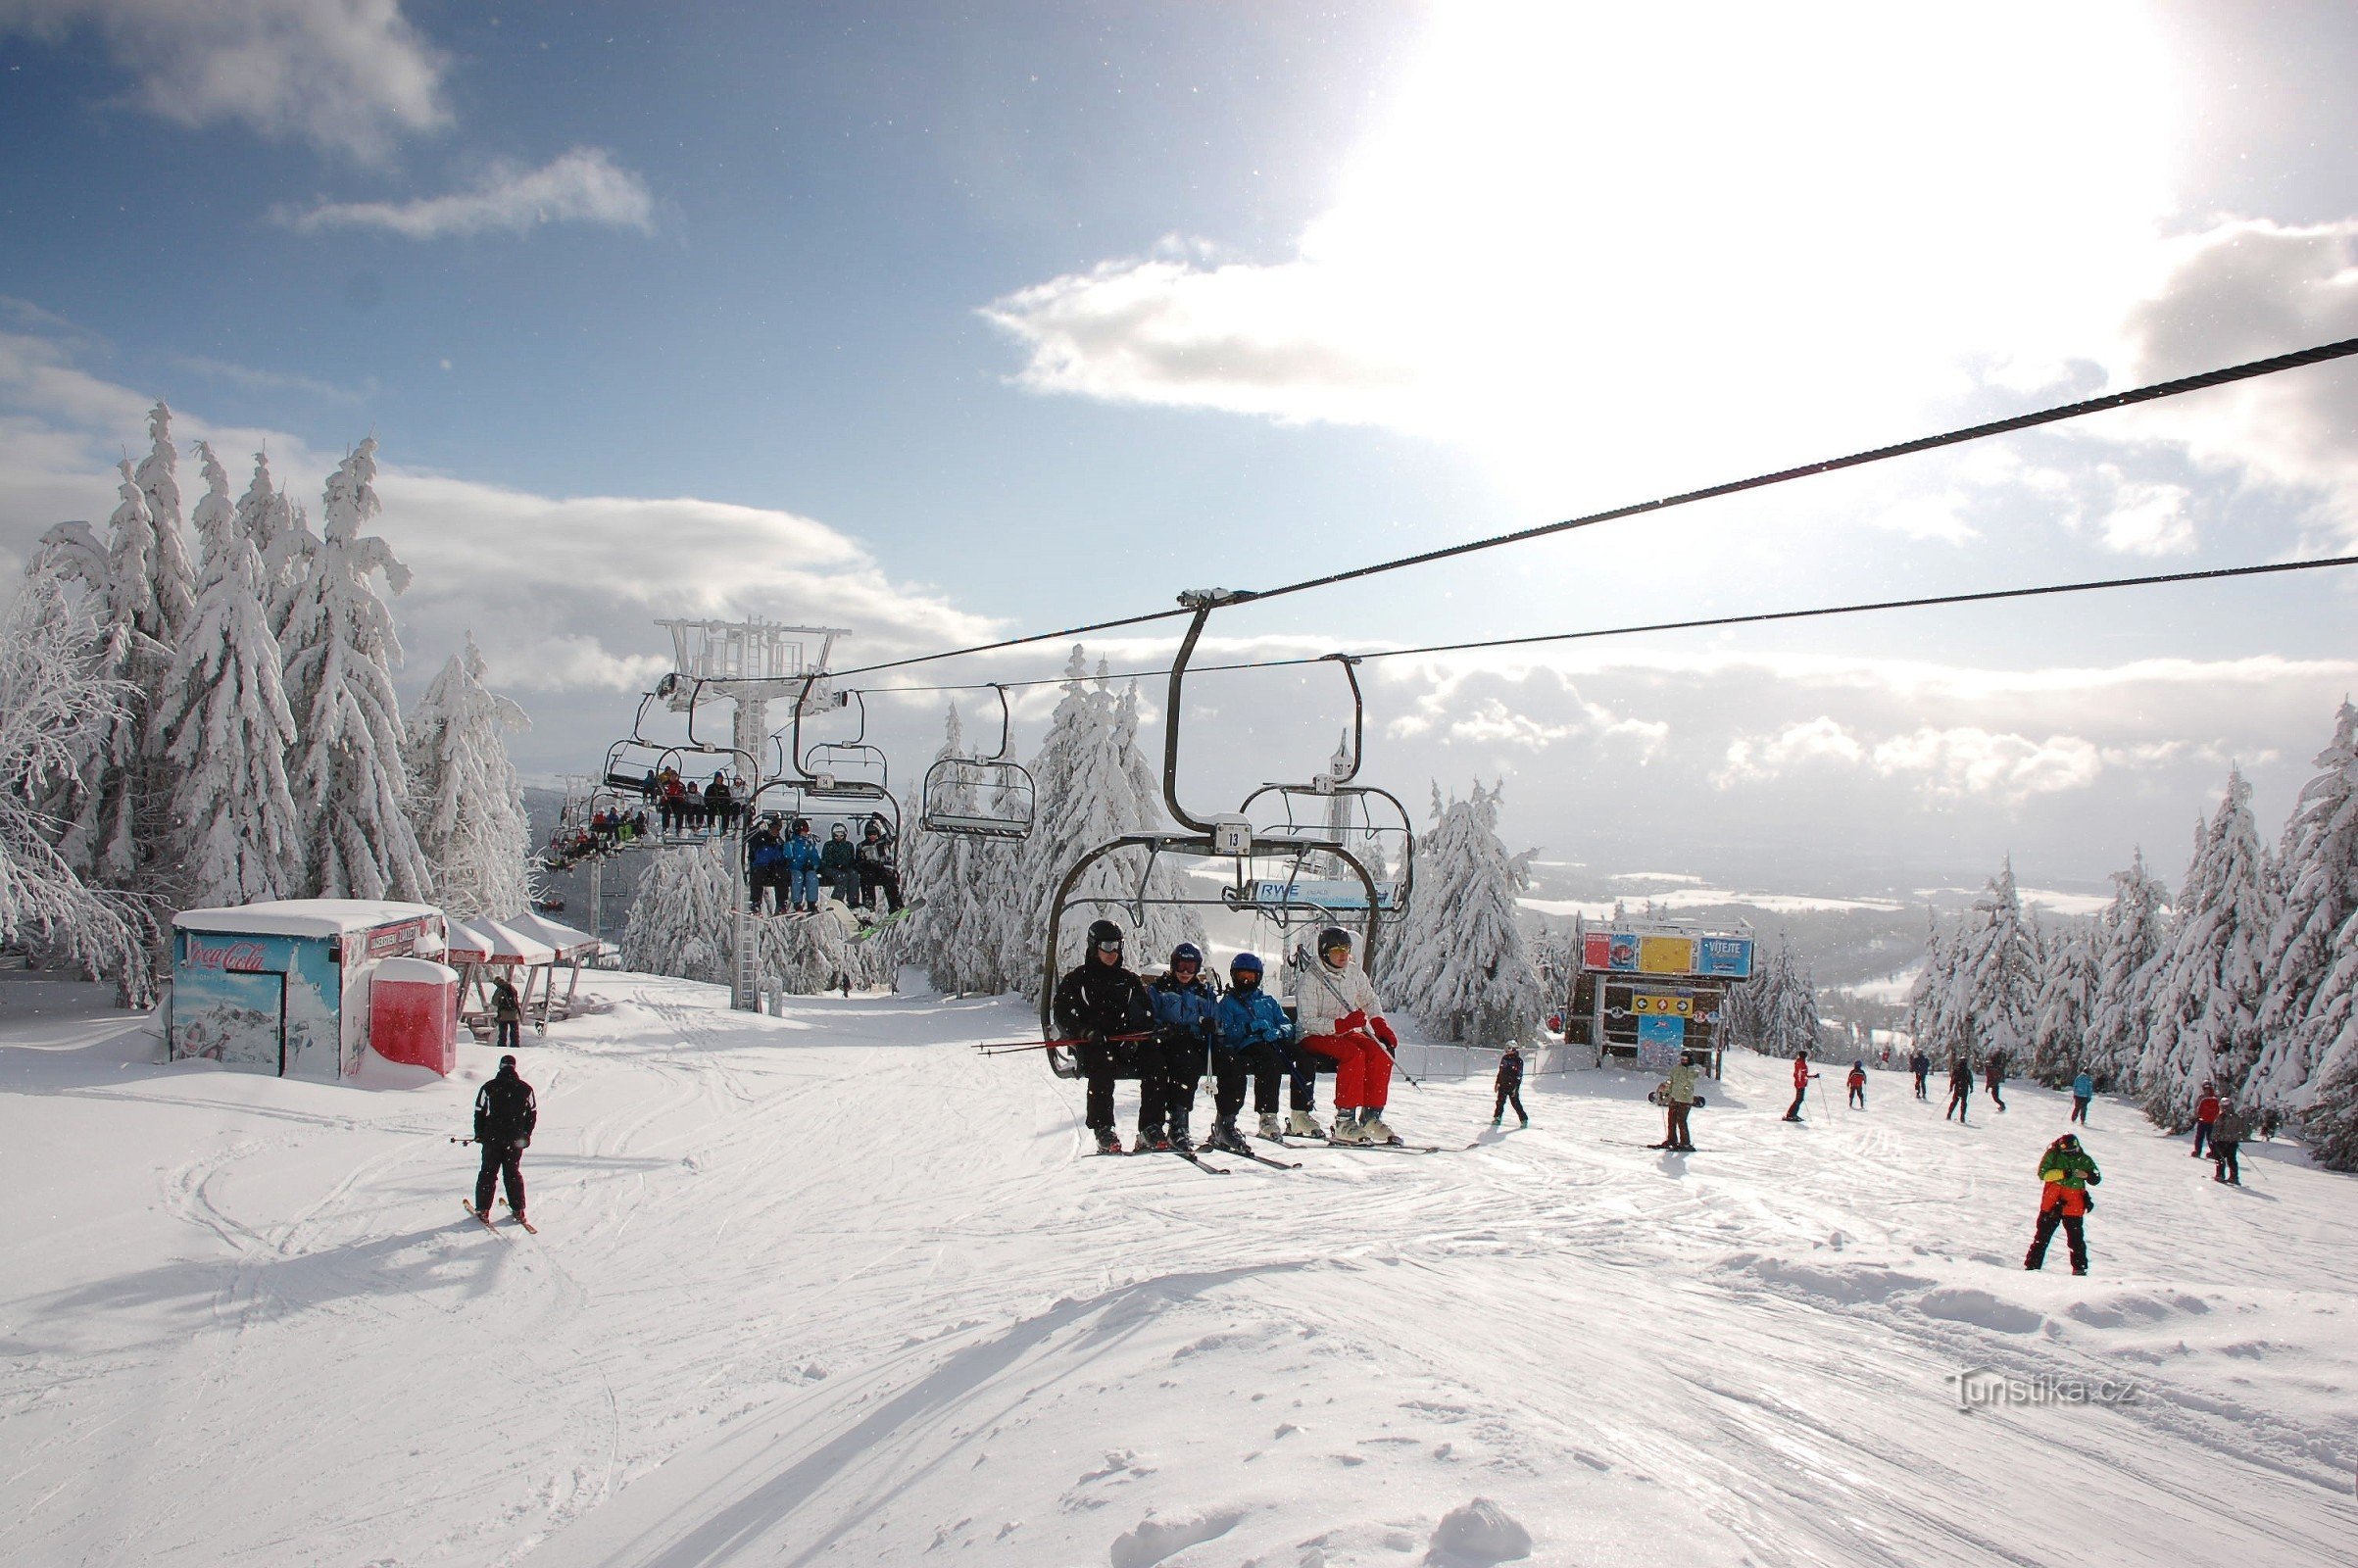 Ski areał Říčky - nowoczesny ośrodek narciarski w sercu Gór Orlickich